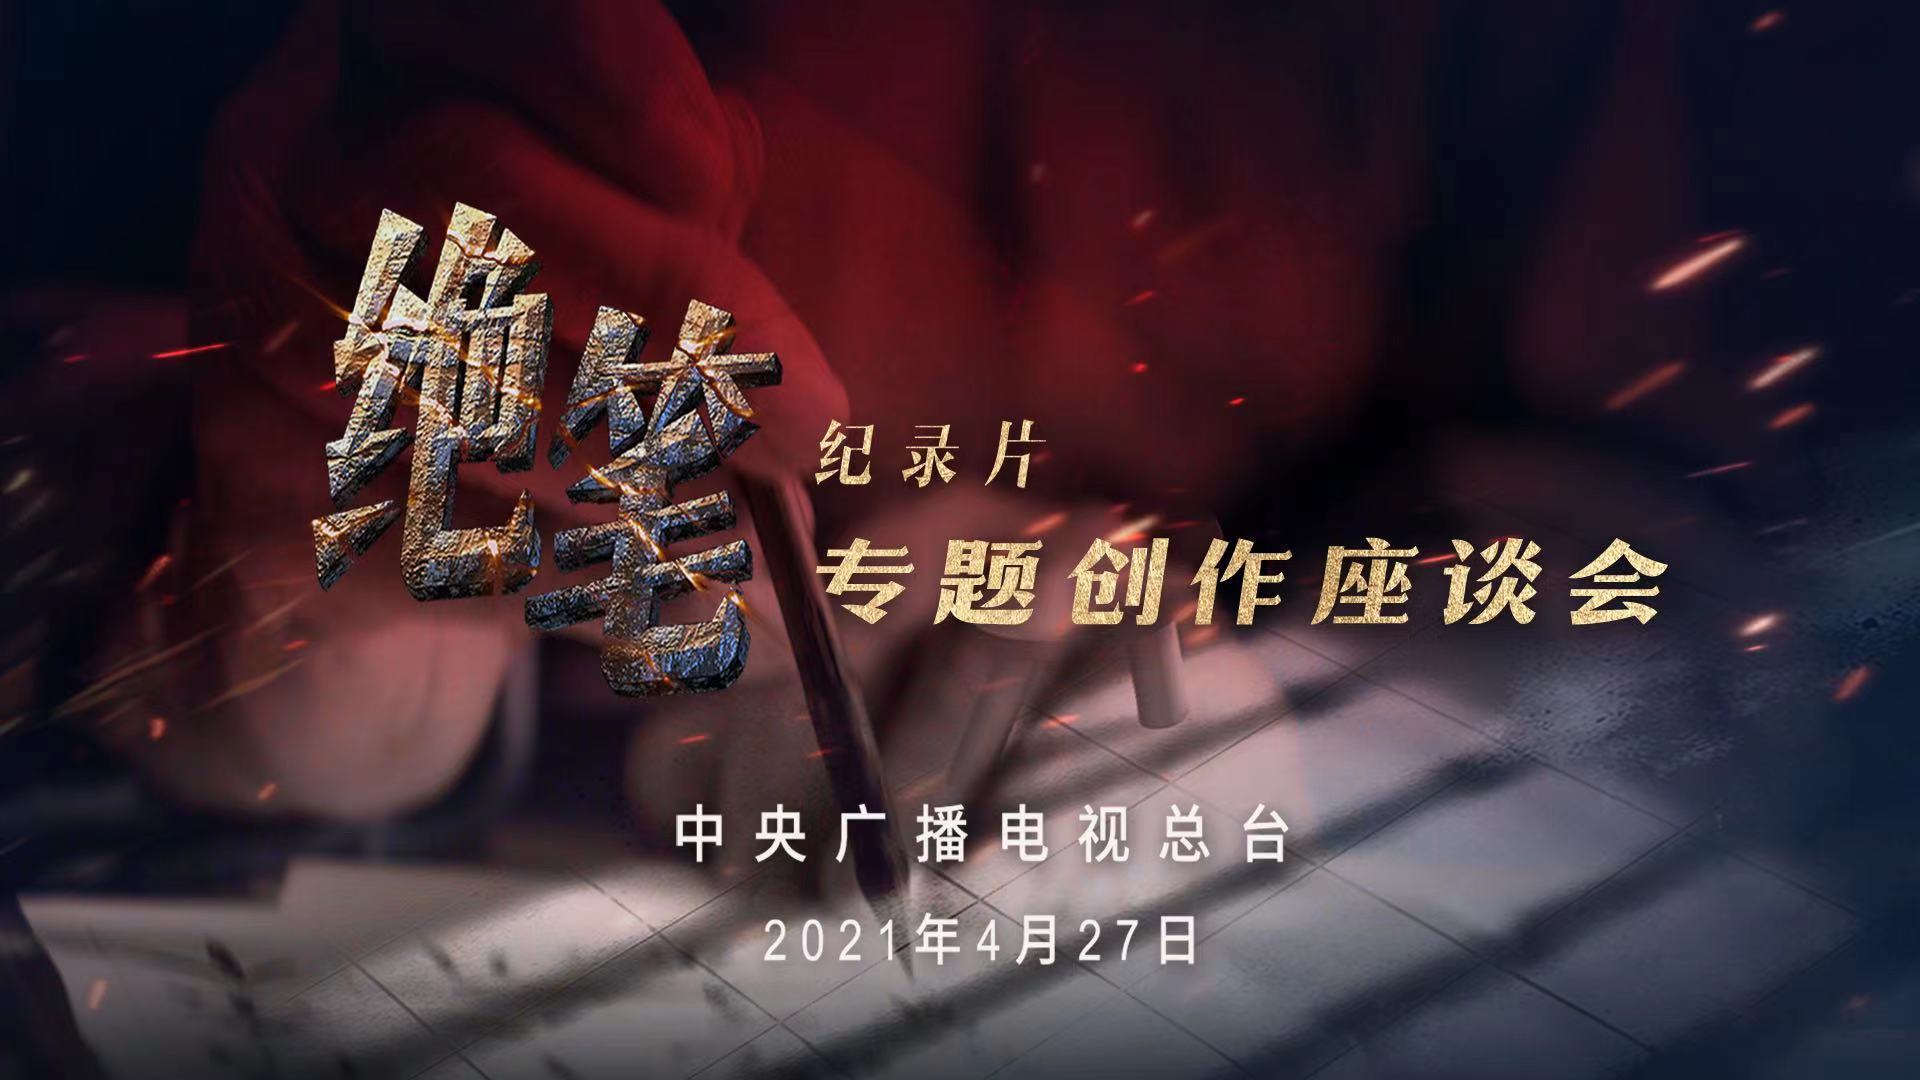 纪录片《绝笔》专题创作座谈会在京举行